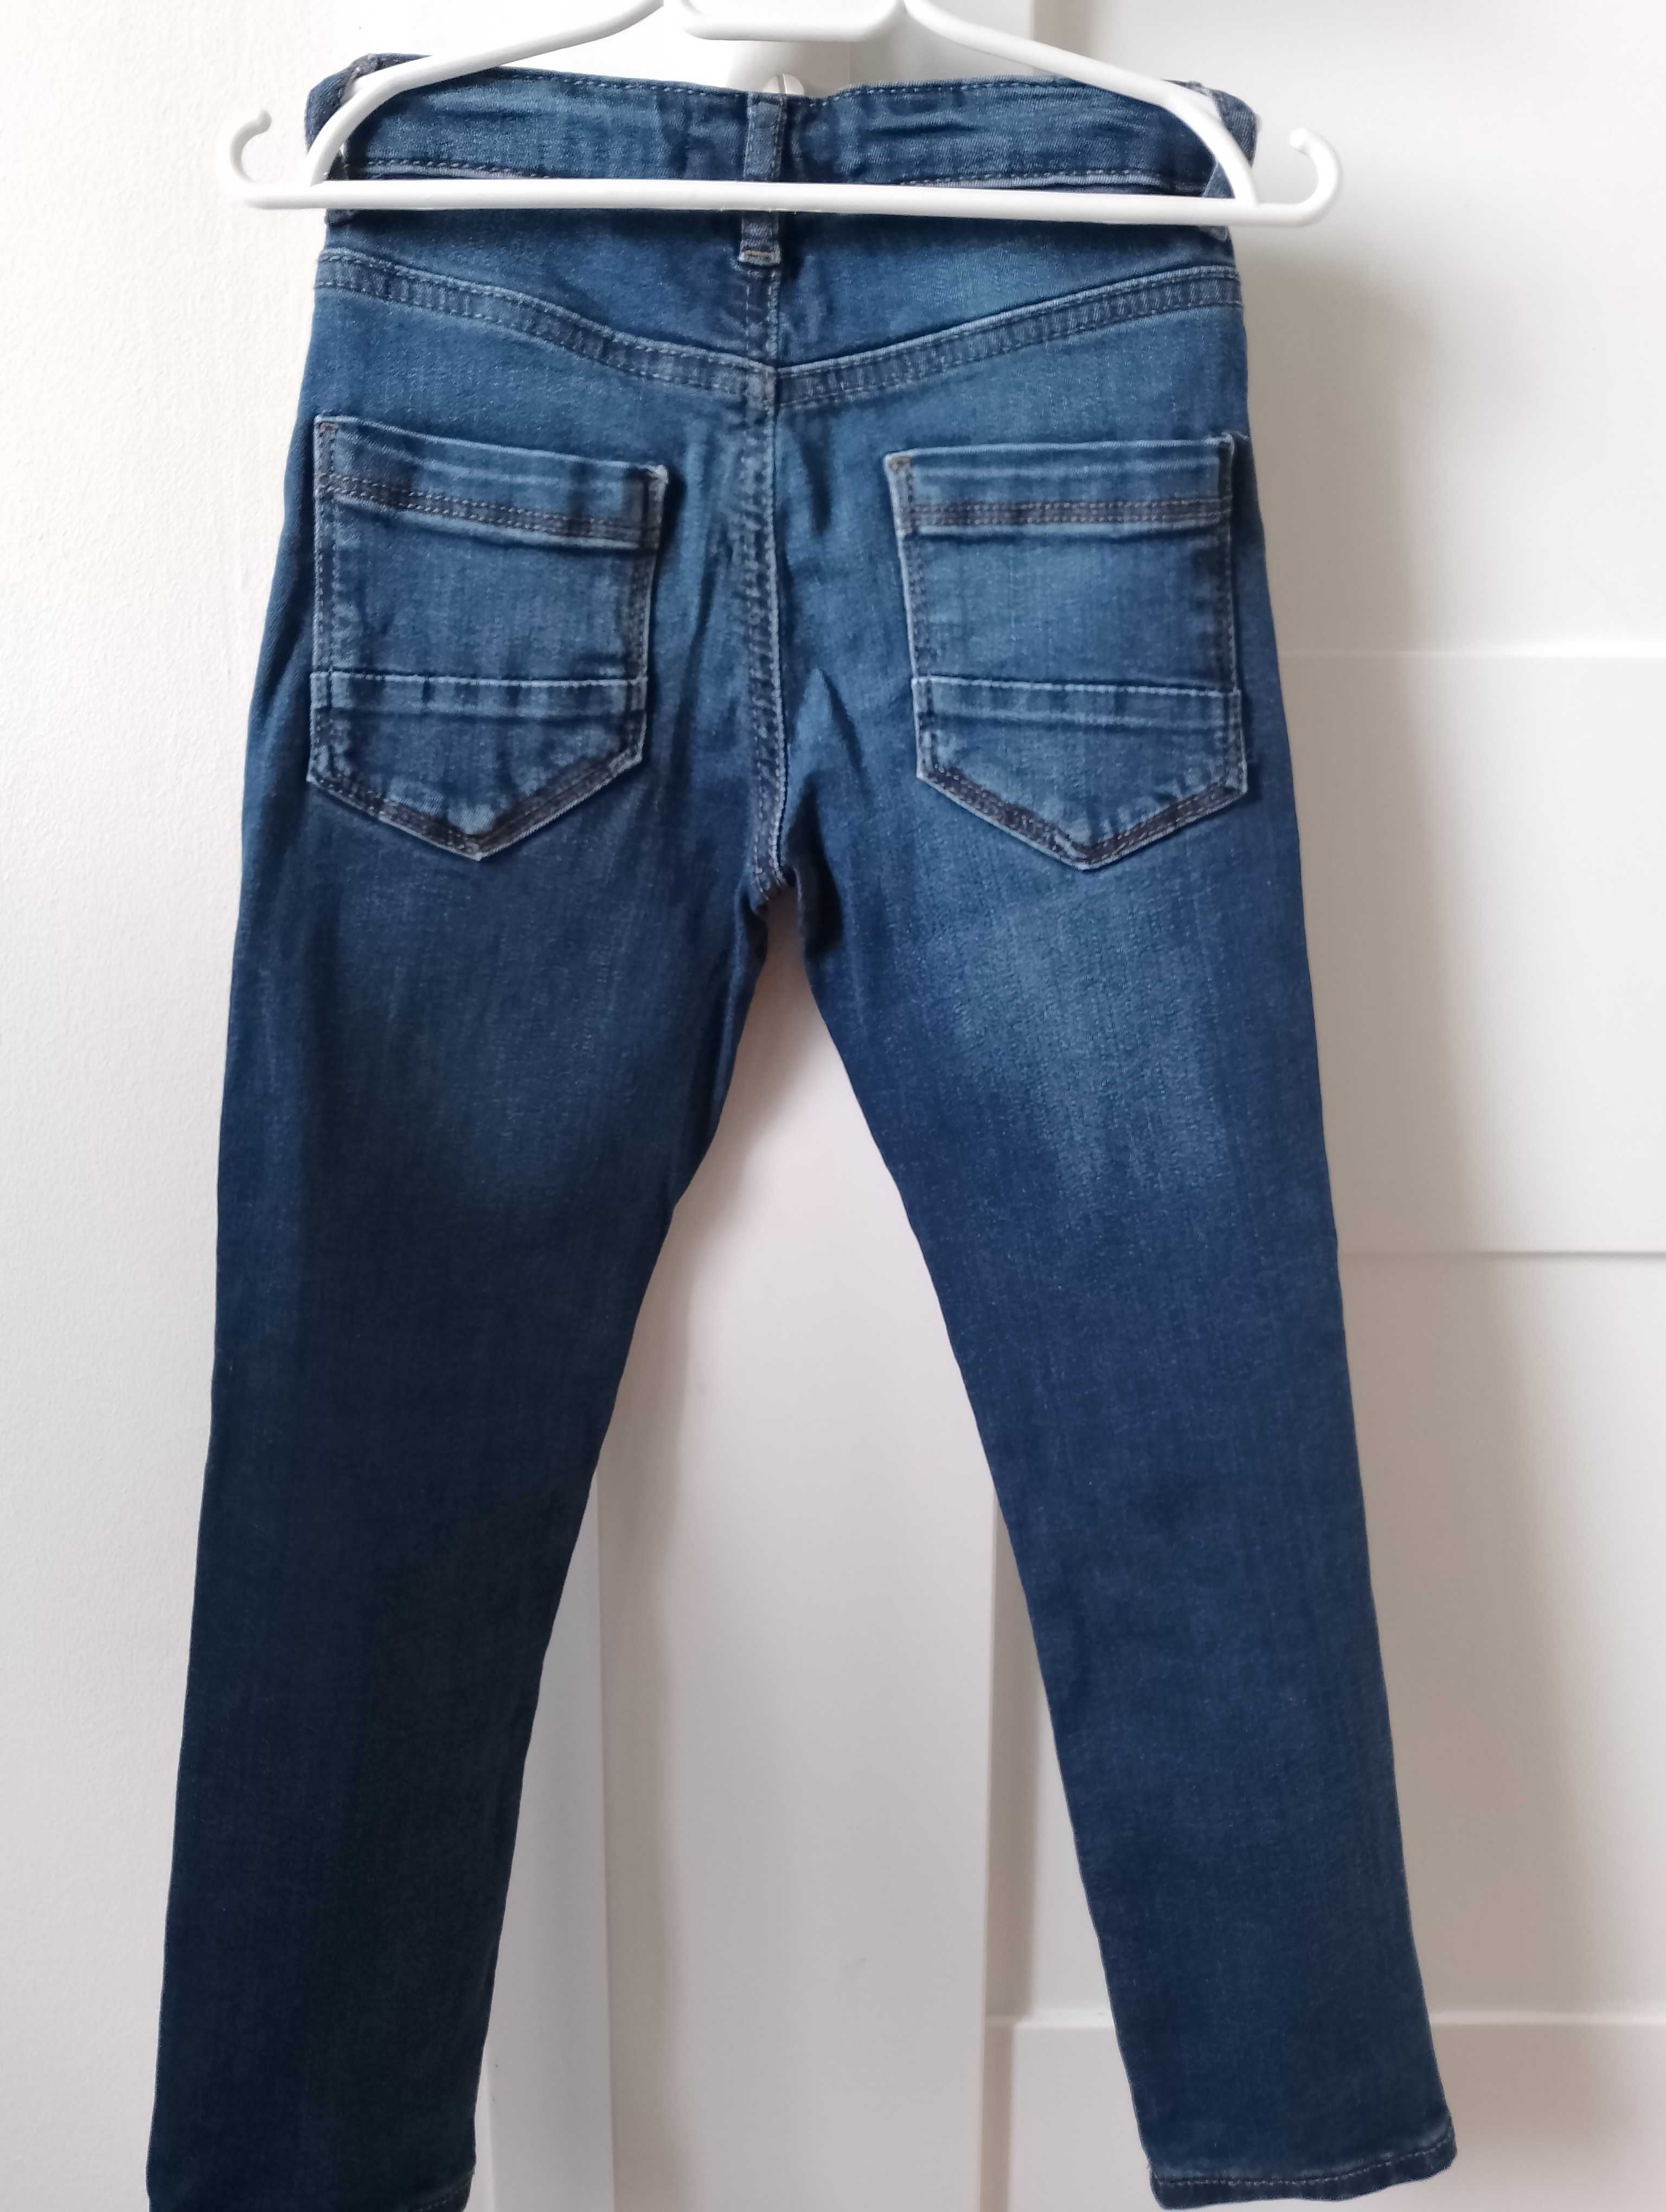 Spodnie jeans chłopięce Next 110 slim